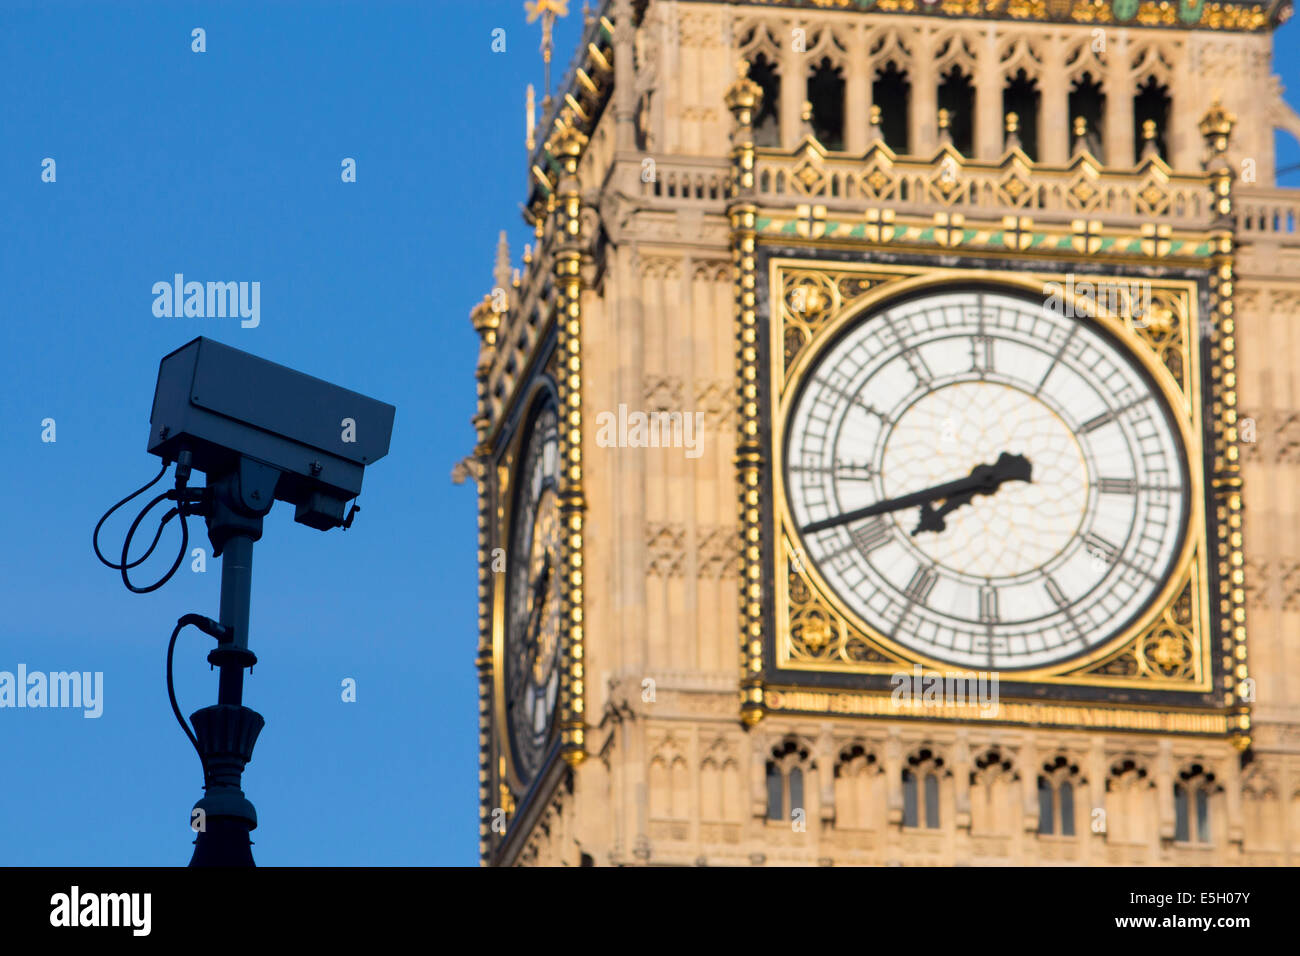 Circuito cerrado de televisión CCTV Cámaras de vigilancia de seguridad junto a las Casas del Parlamento, el Big Ben de Londres Inglaterra Foto de stock